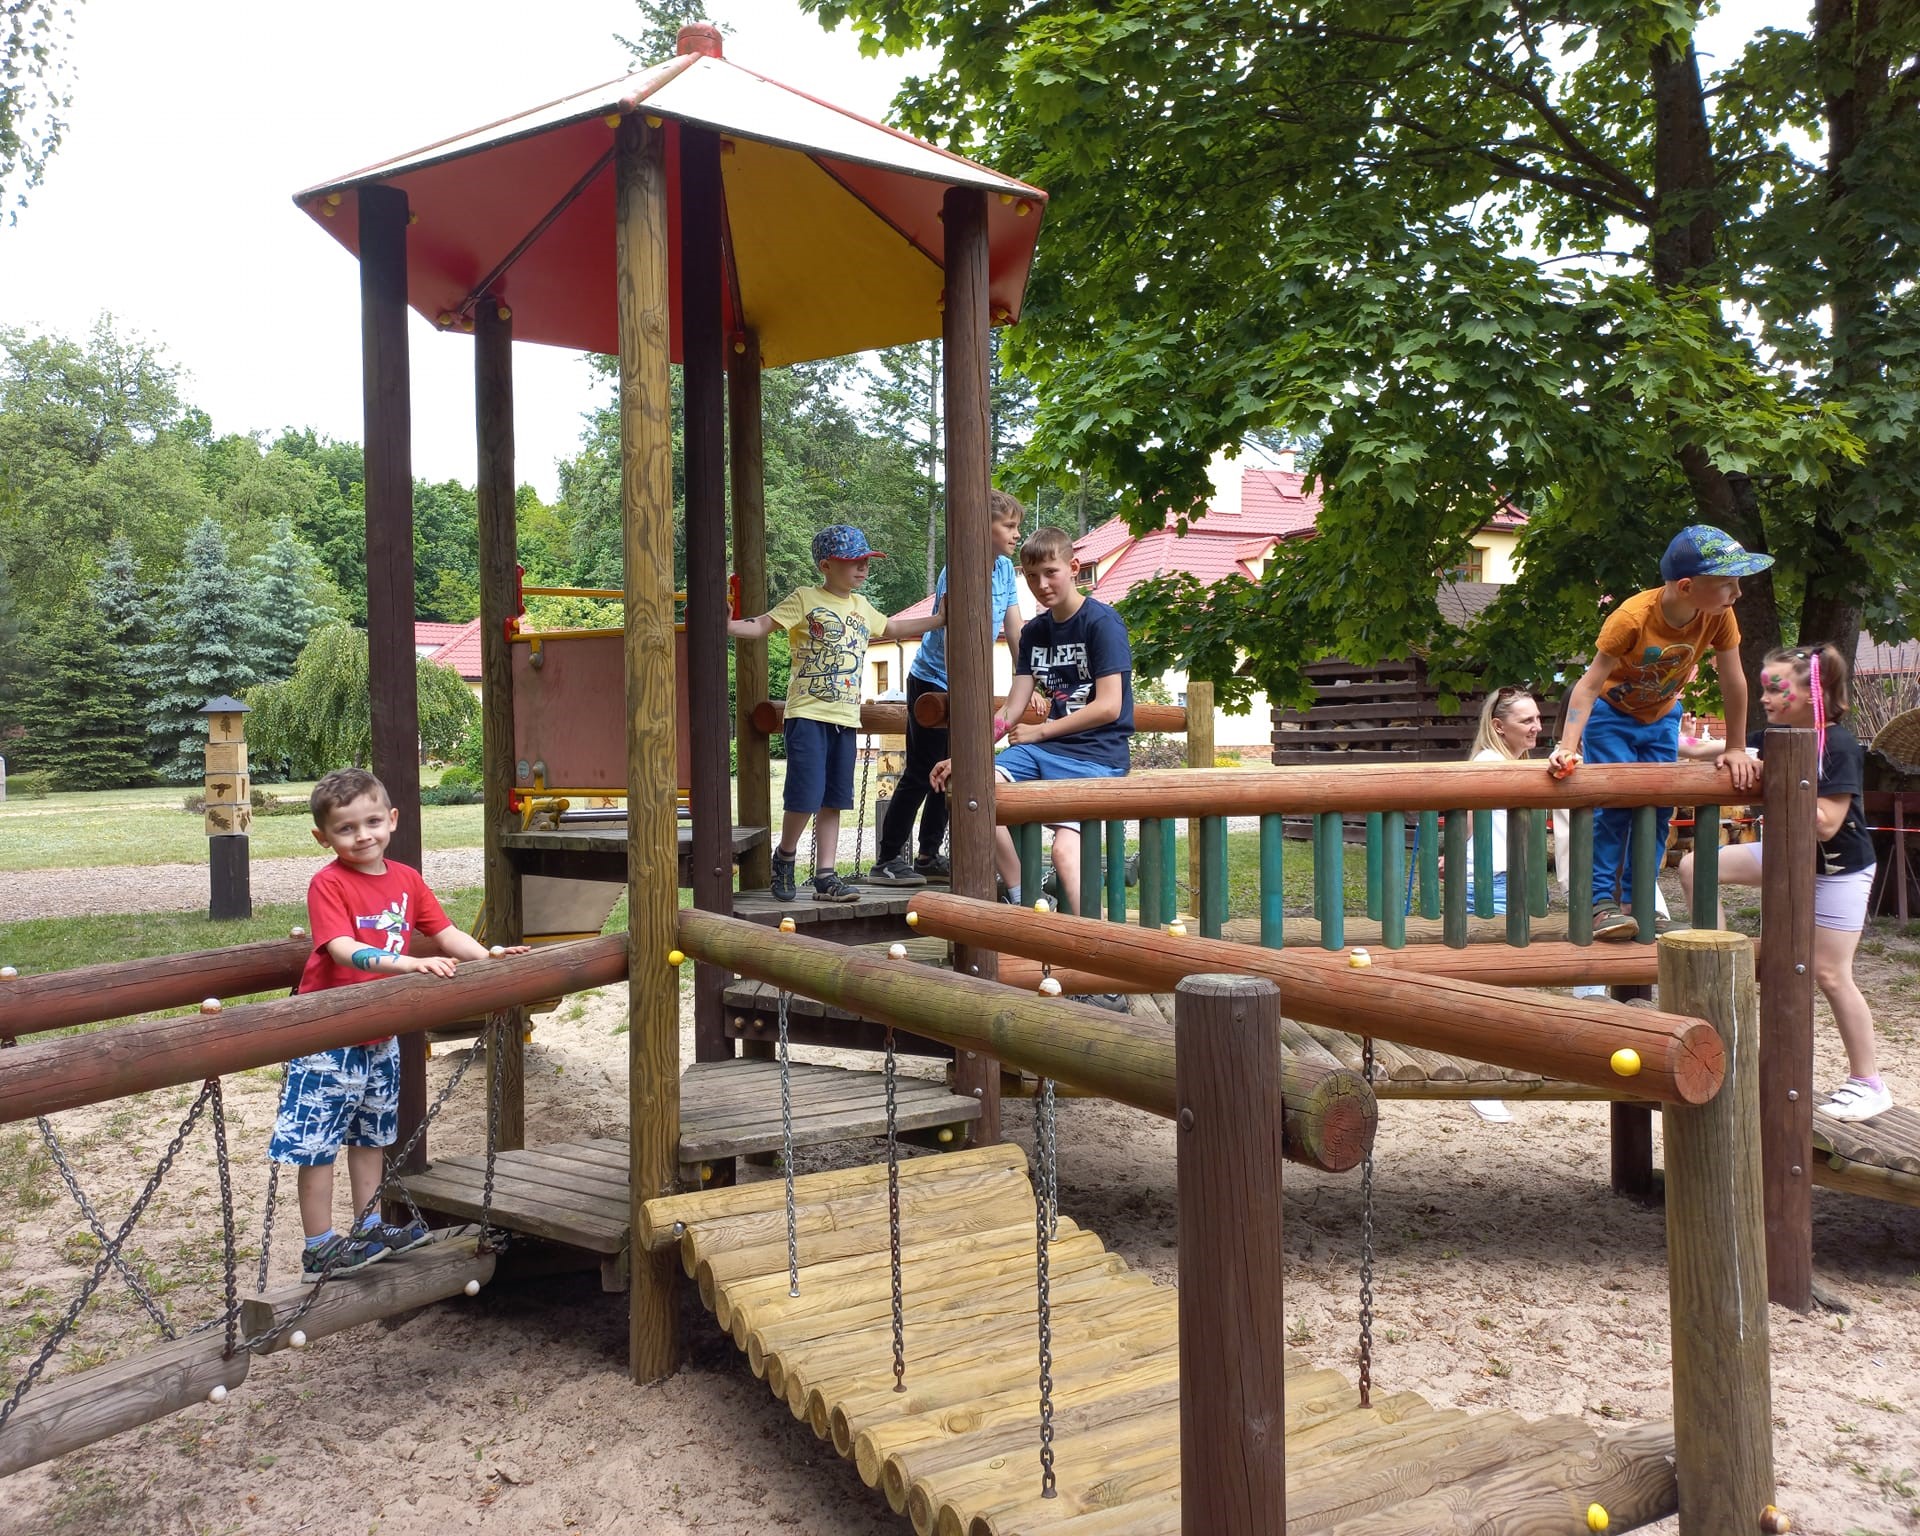 Zdjęcie przedstawia grupę dzieci na drewnianej konstrukcji placu zabaw